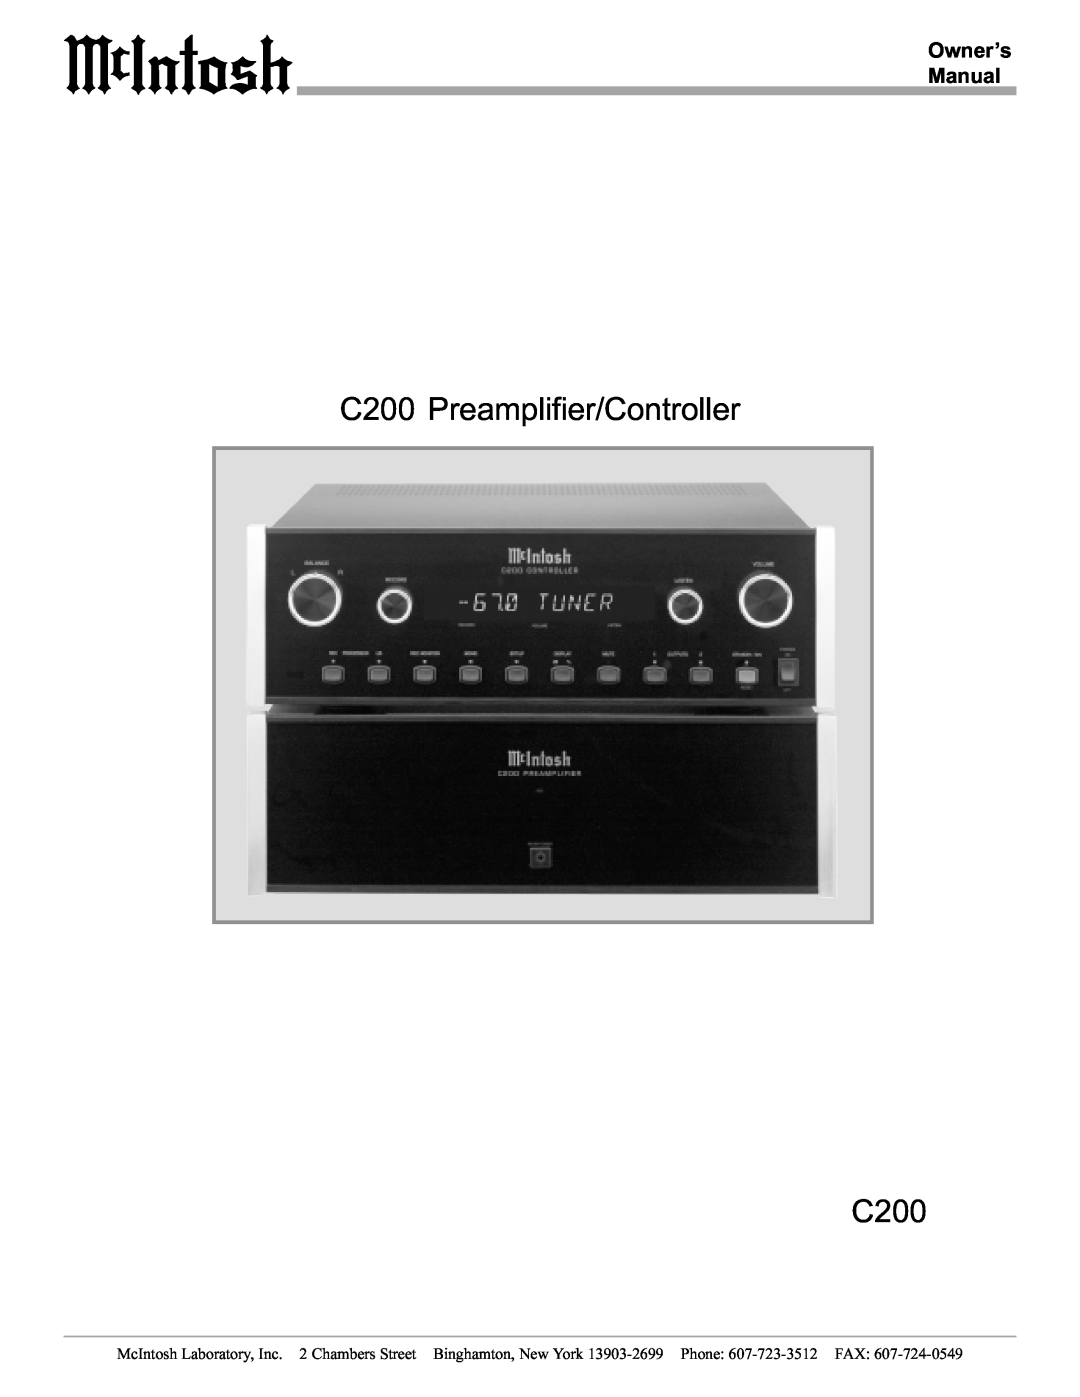 McIntosh manual C200 Preamplifier/Controller C200 